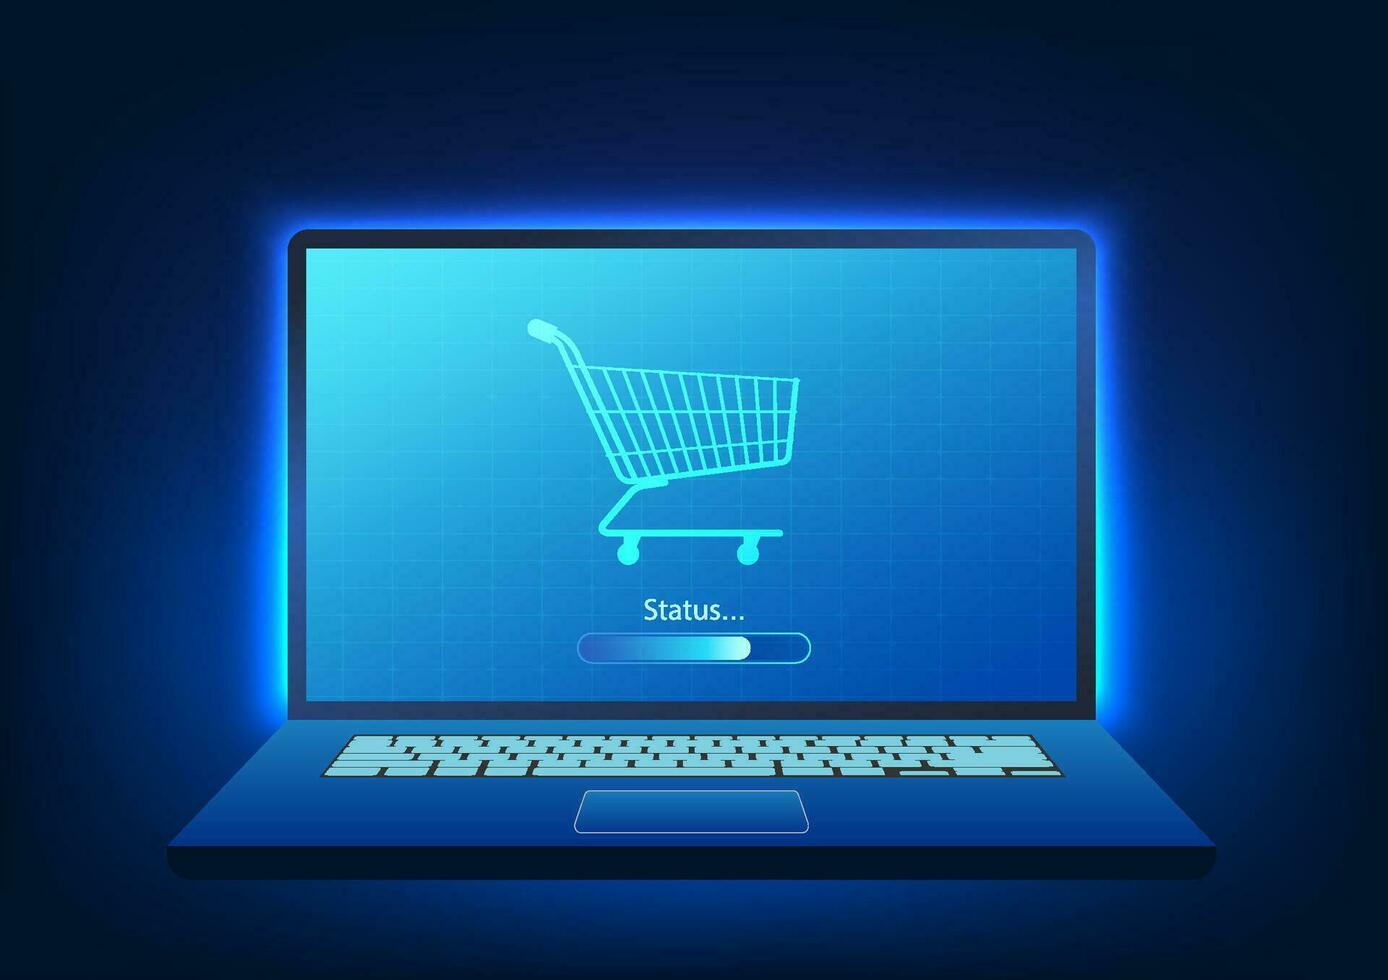 computadora pantalla tiene un compras carro con estado. eso representa en línea compras dónde productos lata ser ordenado en cualquier sitio en el mundo vía el Internet. vector